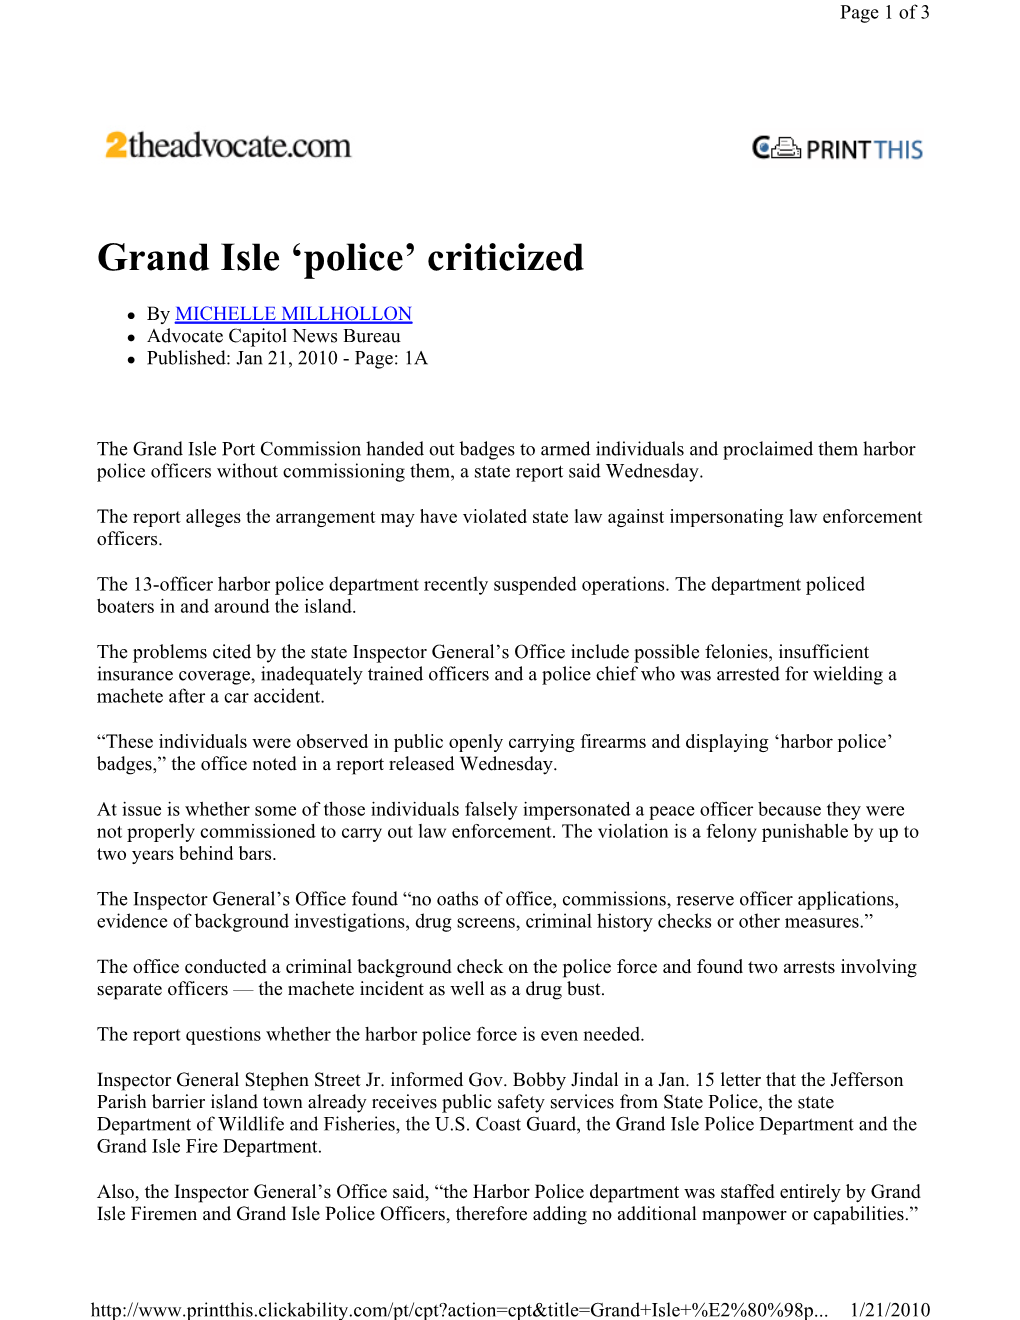 Grand Isle 'Police' Criticized